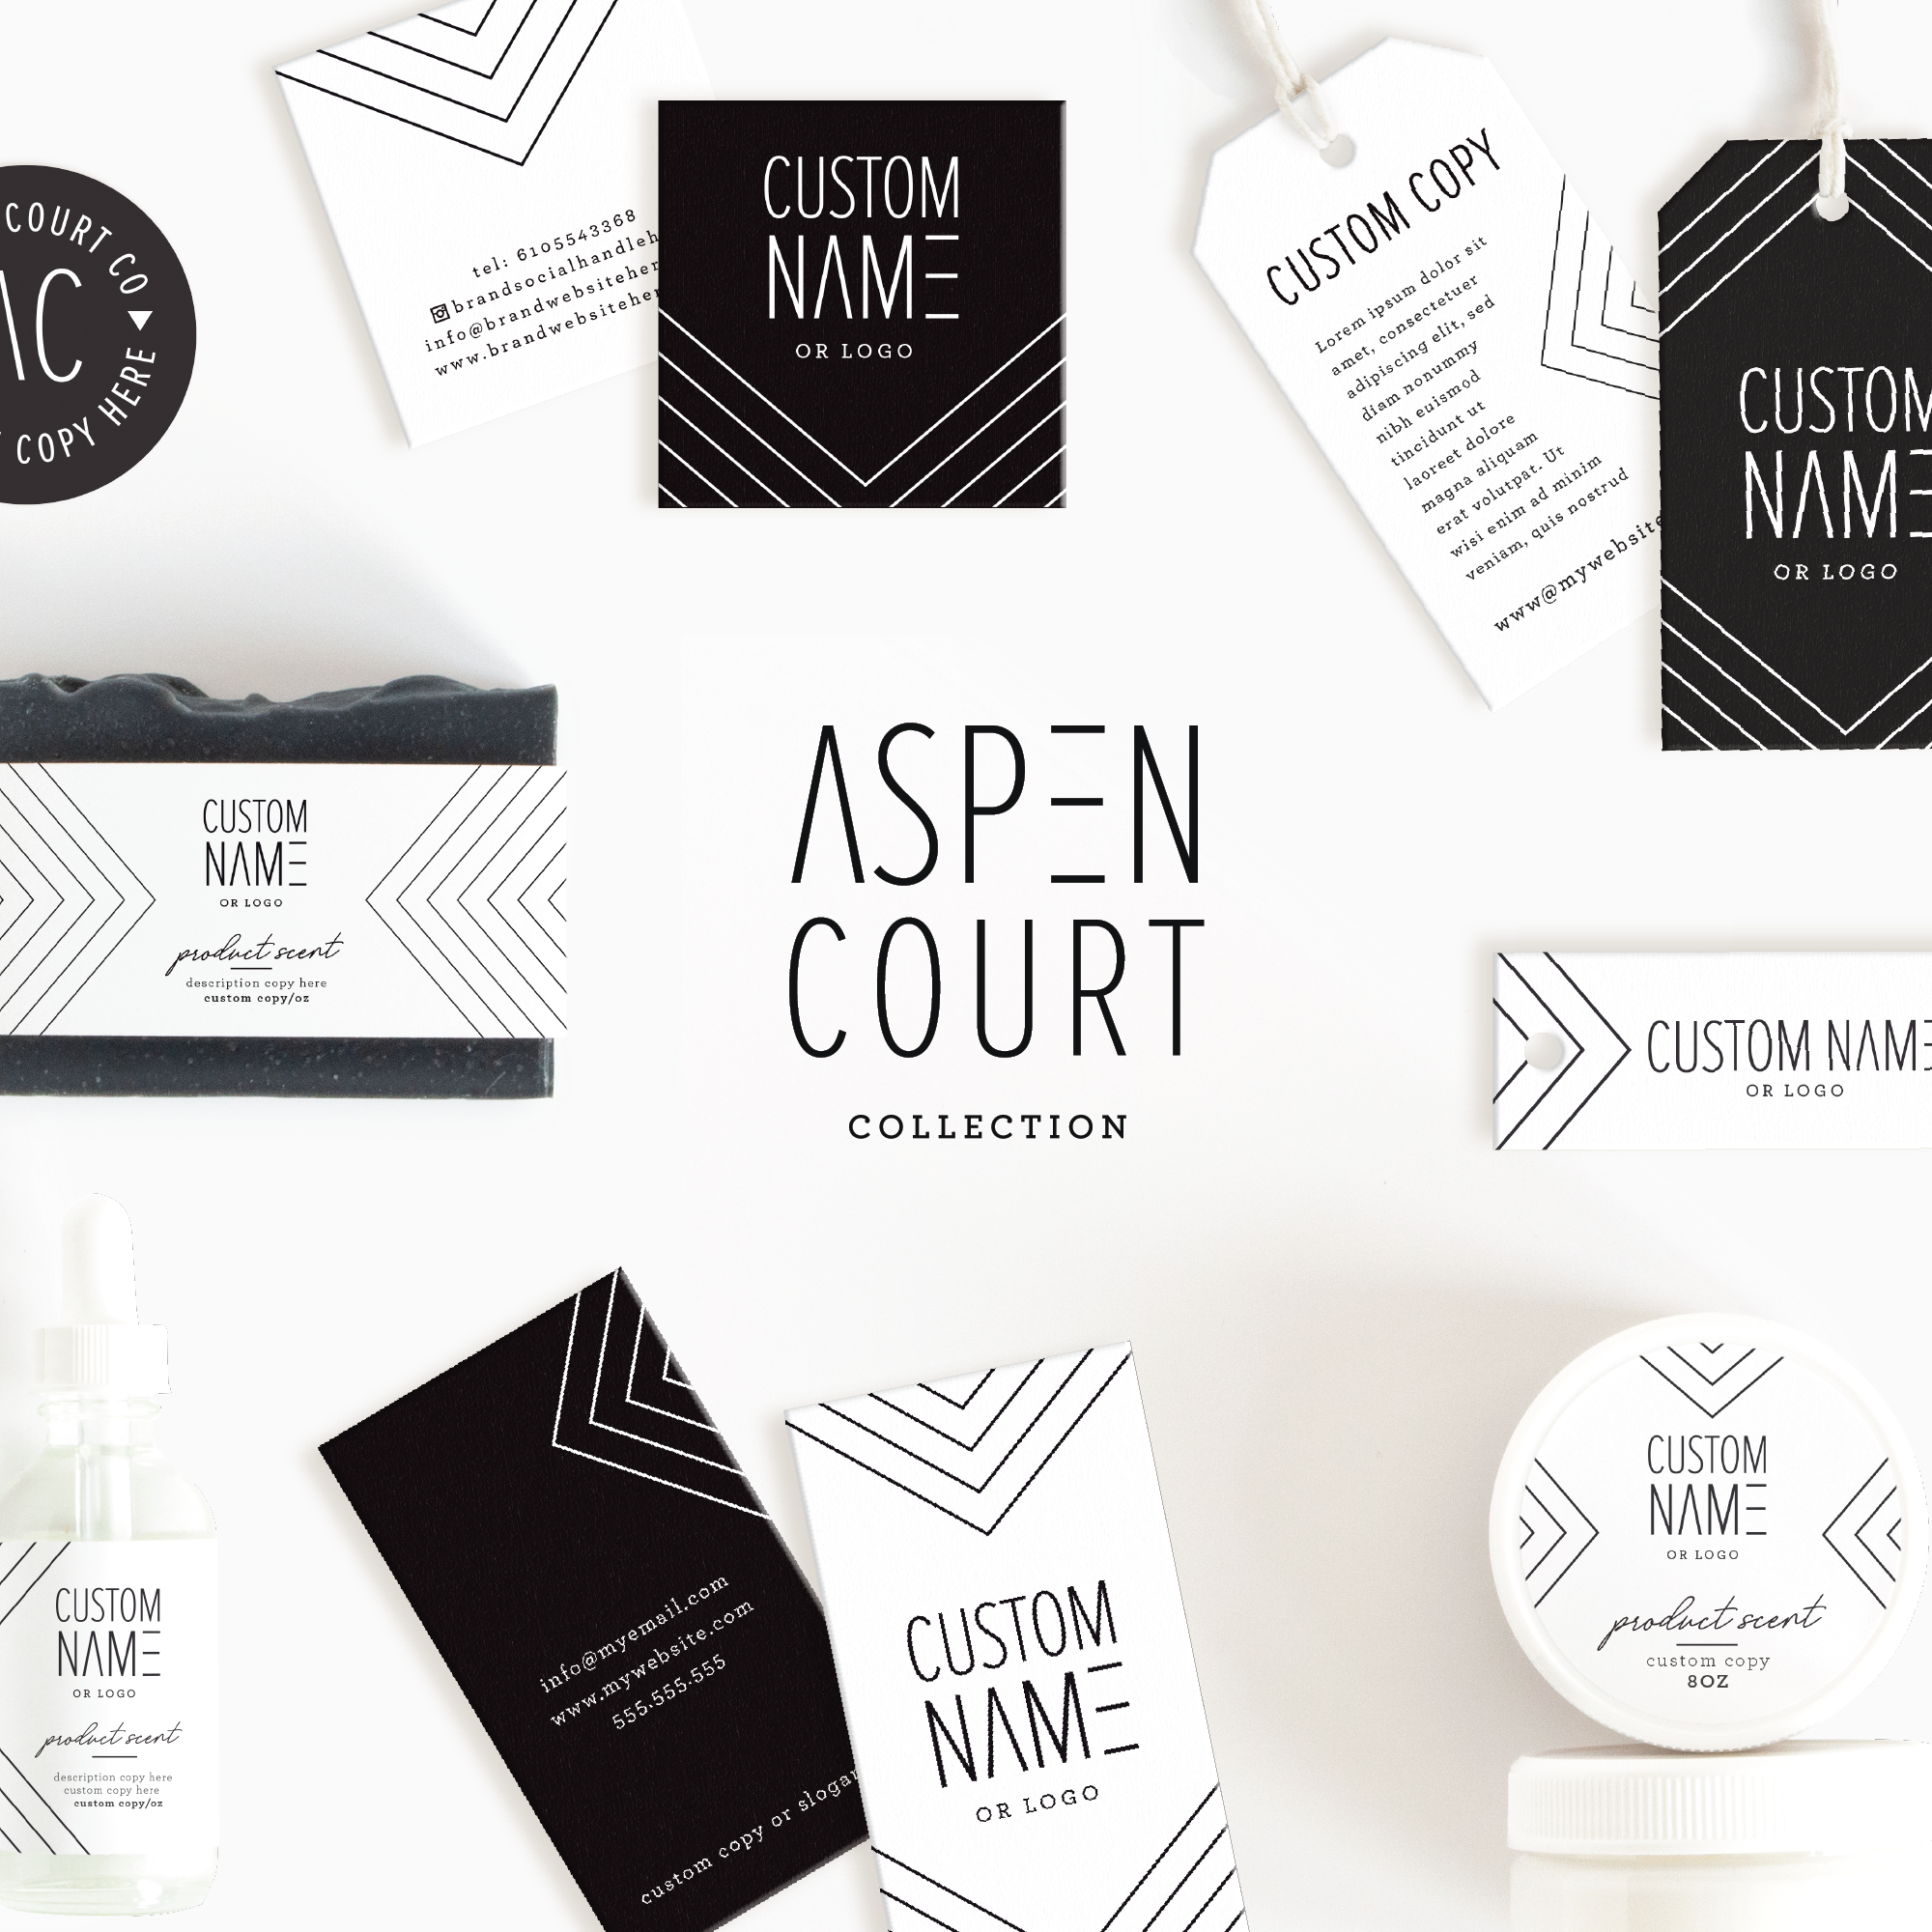 Aspen Court Wrap Product Label